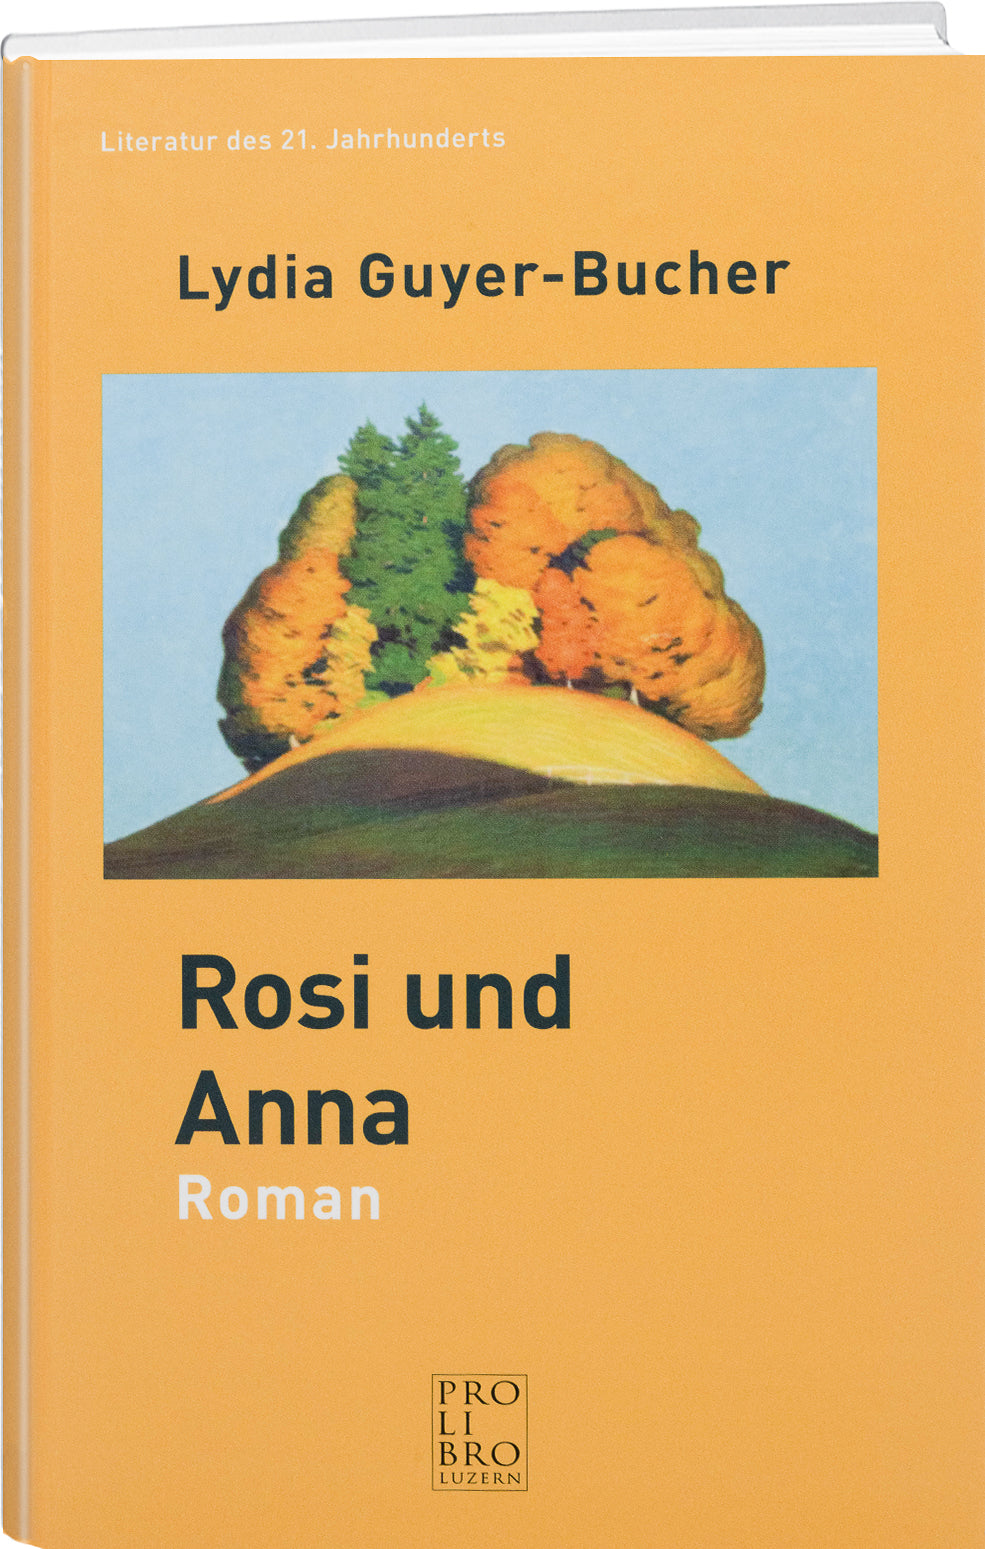 Lydia Guyer-Bucher: Rosi und Anna - WEBER VERLAG